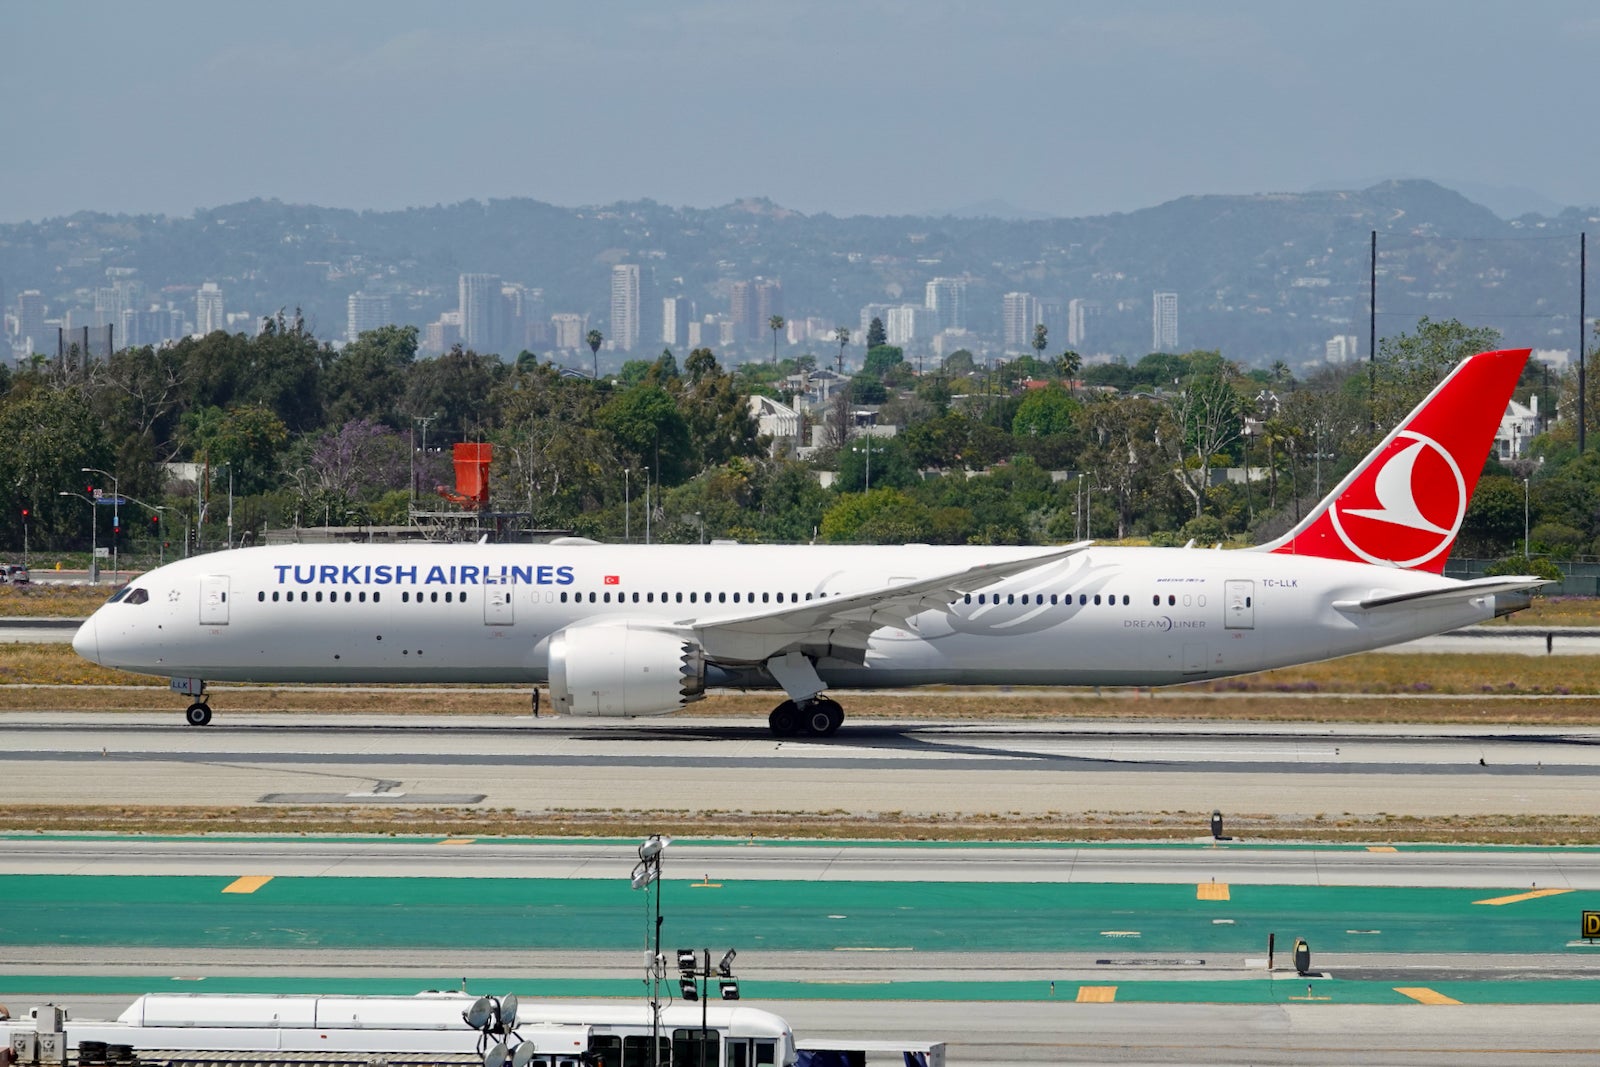 Turkish Airlines Boeing 787 Dreamliner